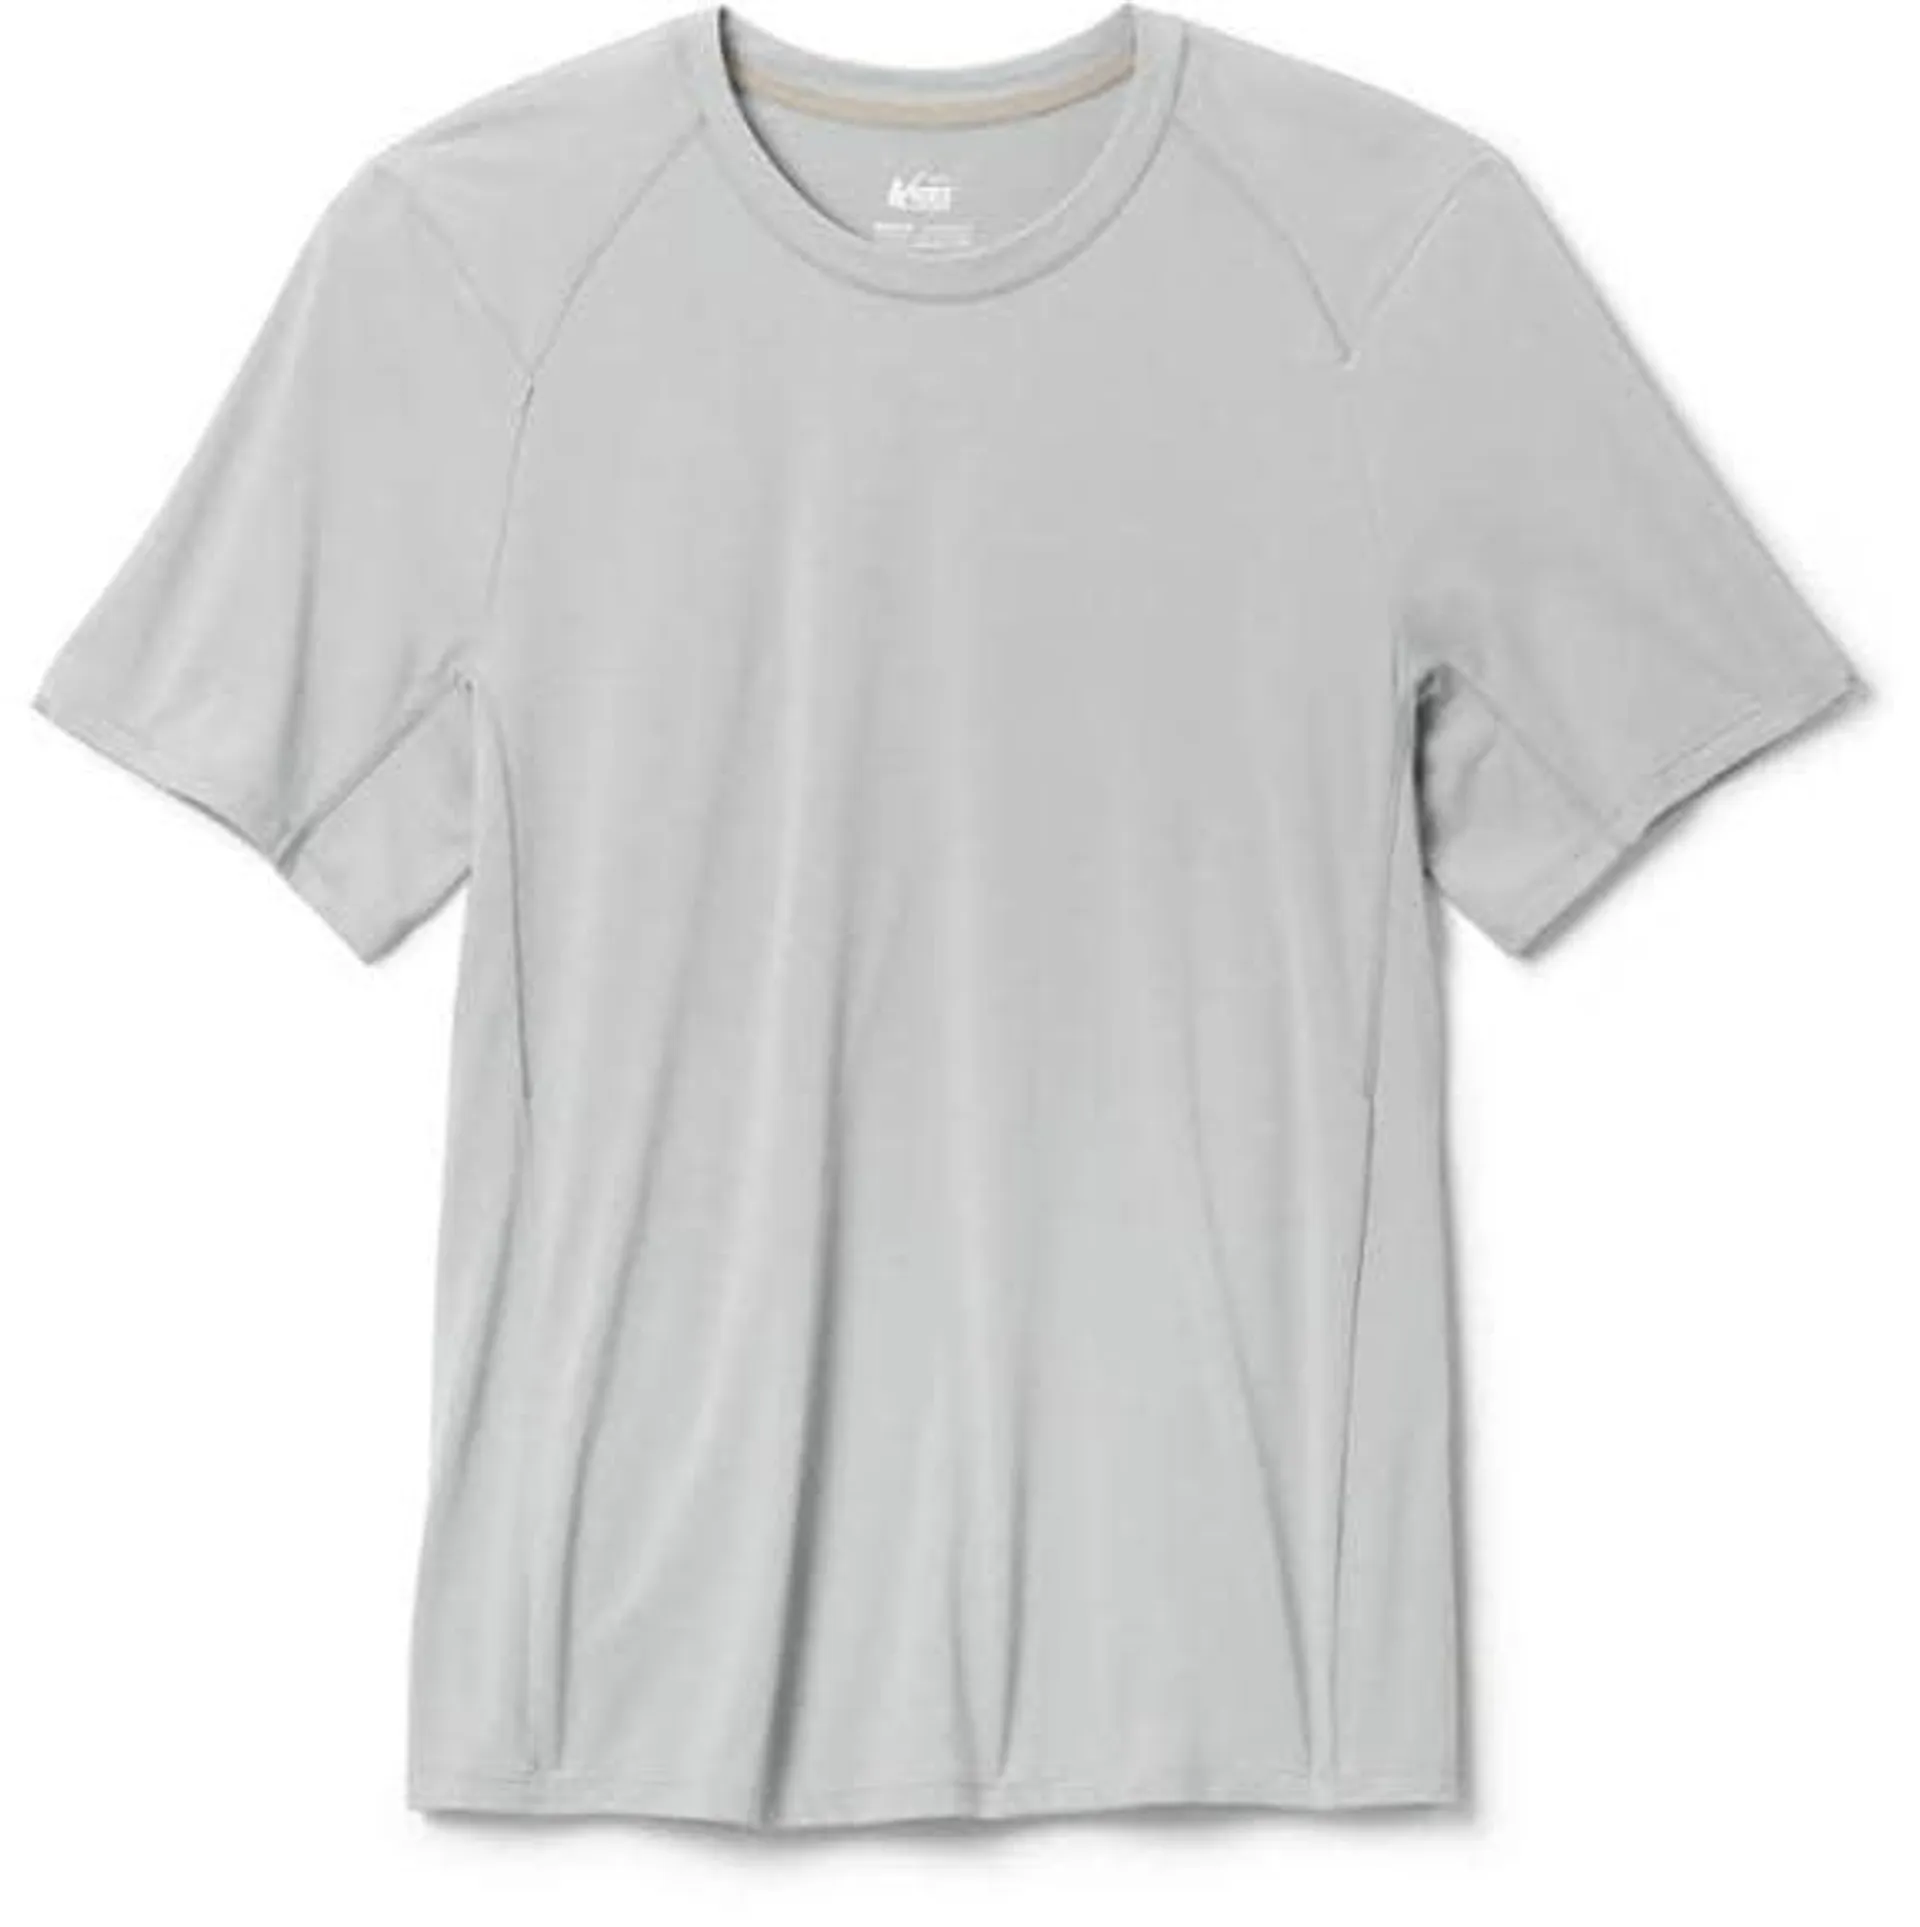 REI Co-op Swiftland Running T-Shirt - Men's